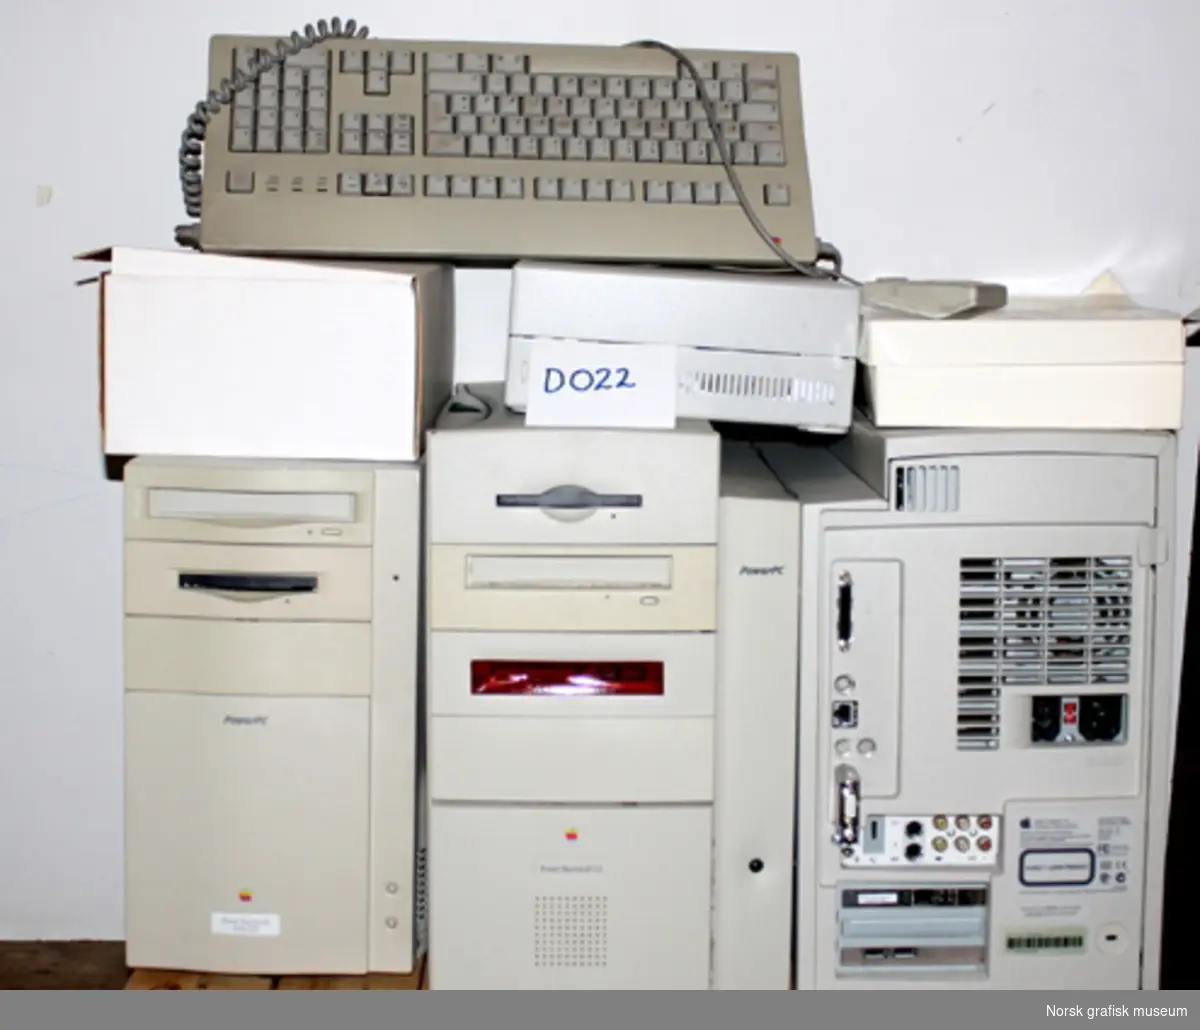 Macintosh fotosetteri (databehandlingsanlegg). Harddisken er det sentrale lageret, mens "towerene" er hver arbeider sin arbeidsstasjon.